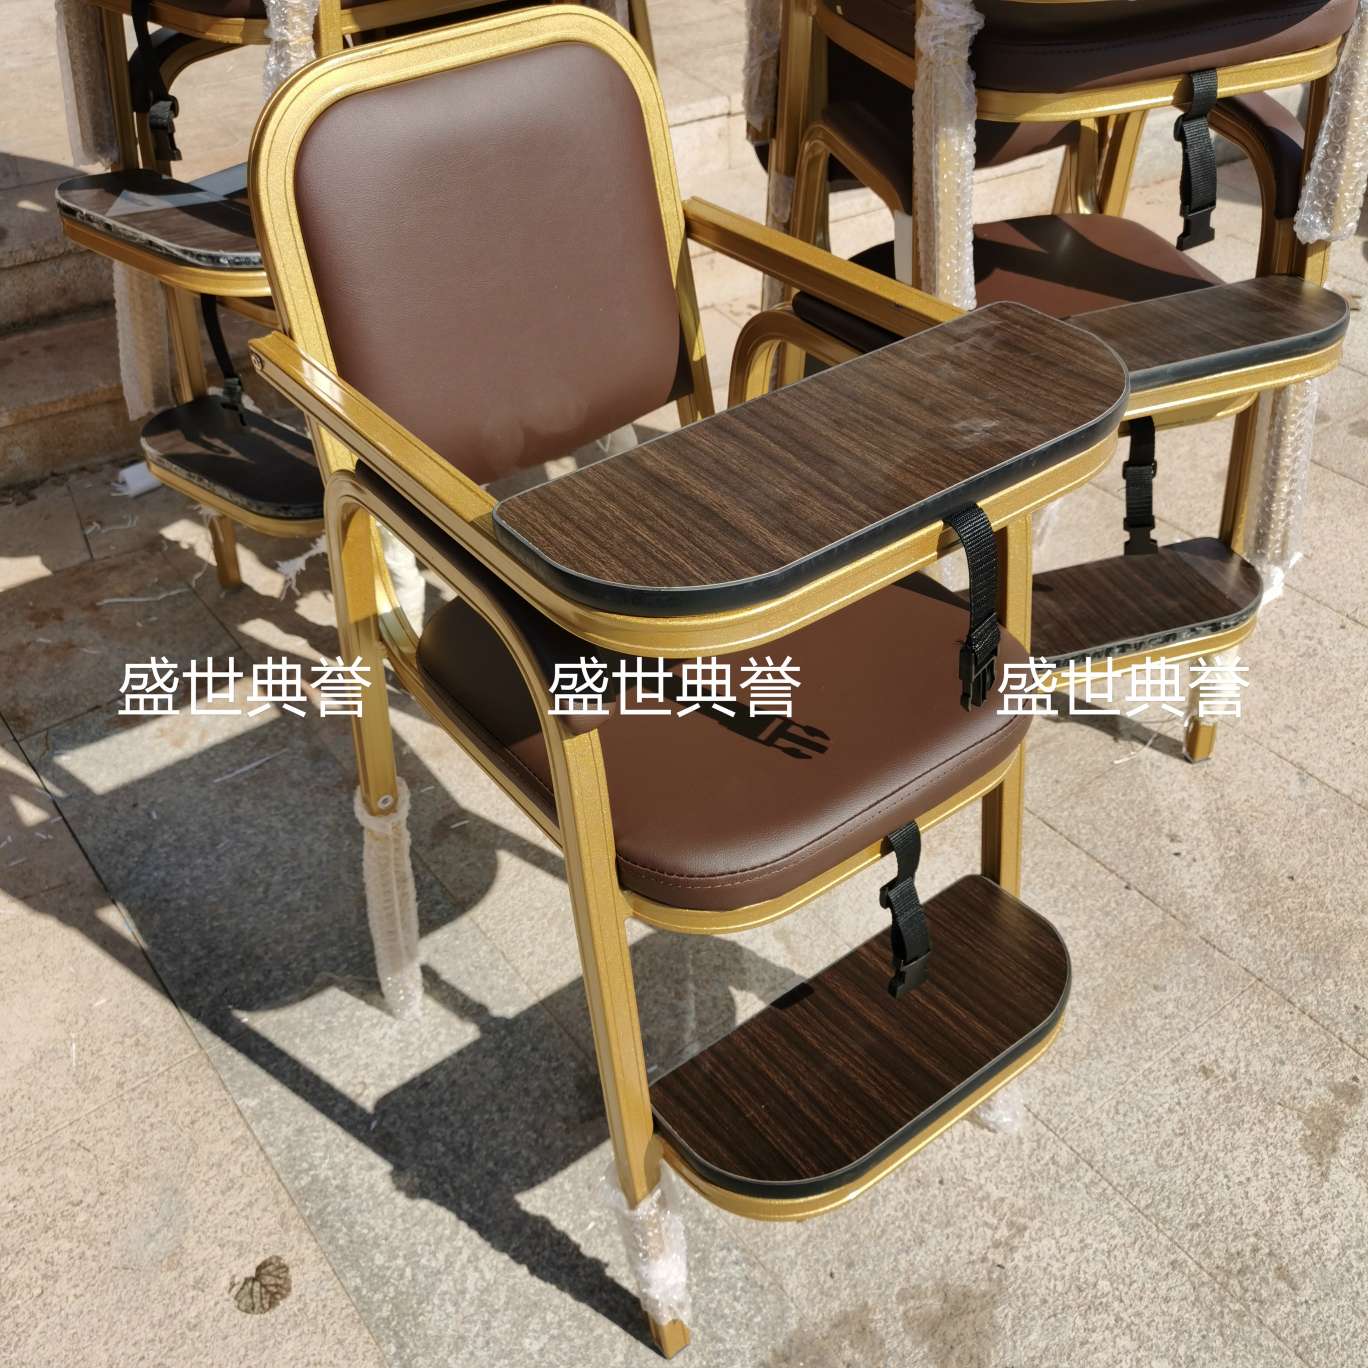 上海五星级酒店宴会厅宝宝餐椅饭店包厢儿童就餐椅子铝合金宝宝椅图